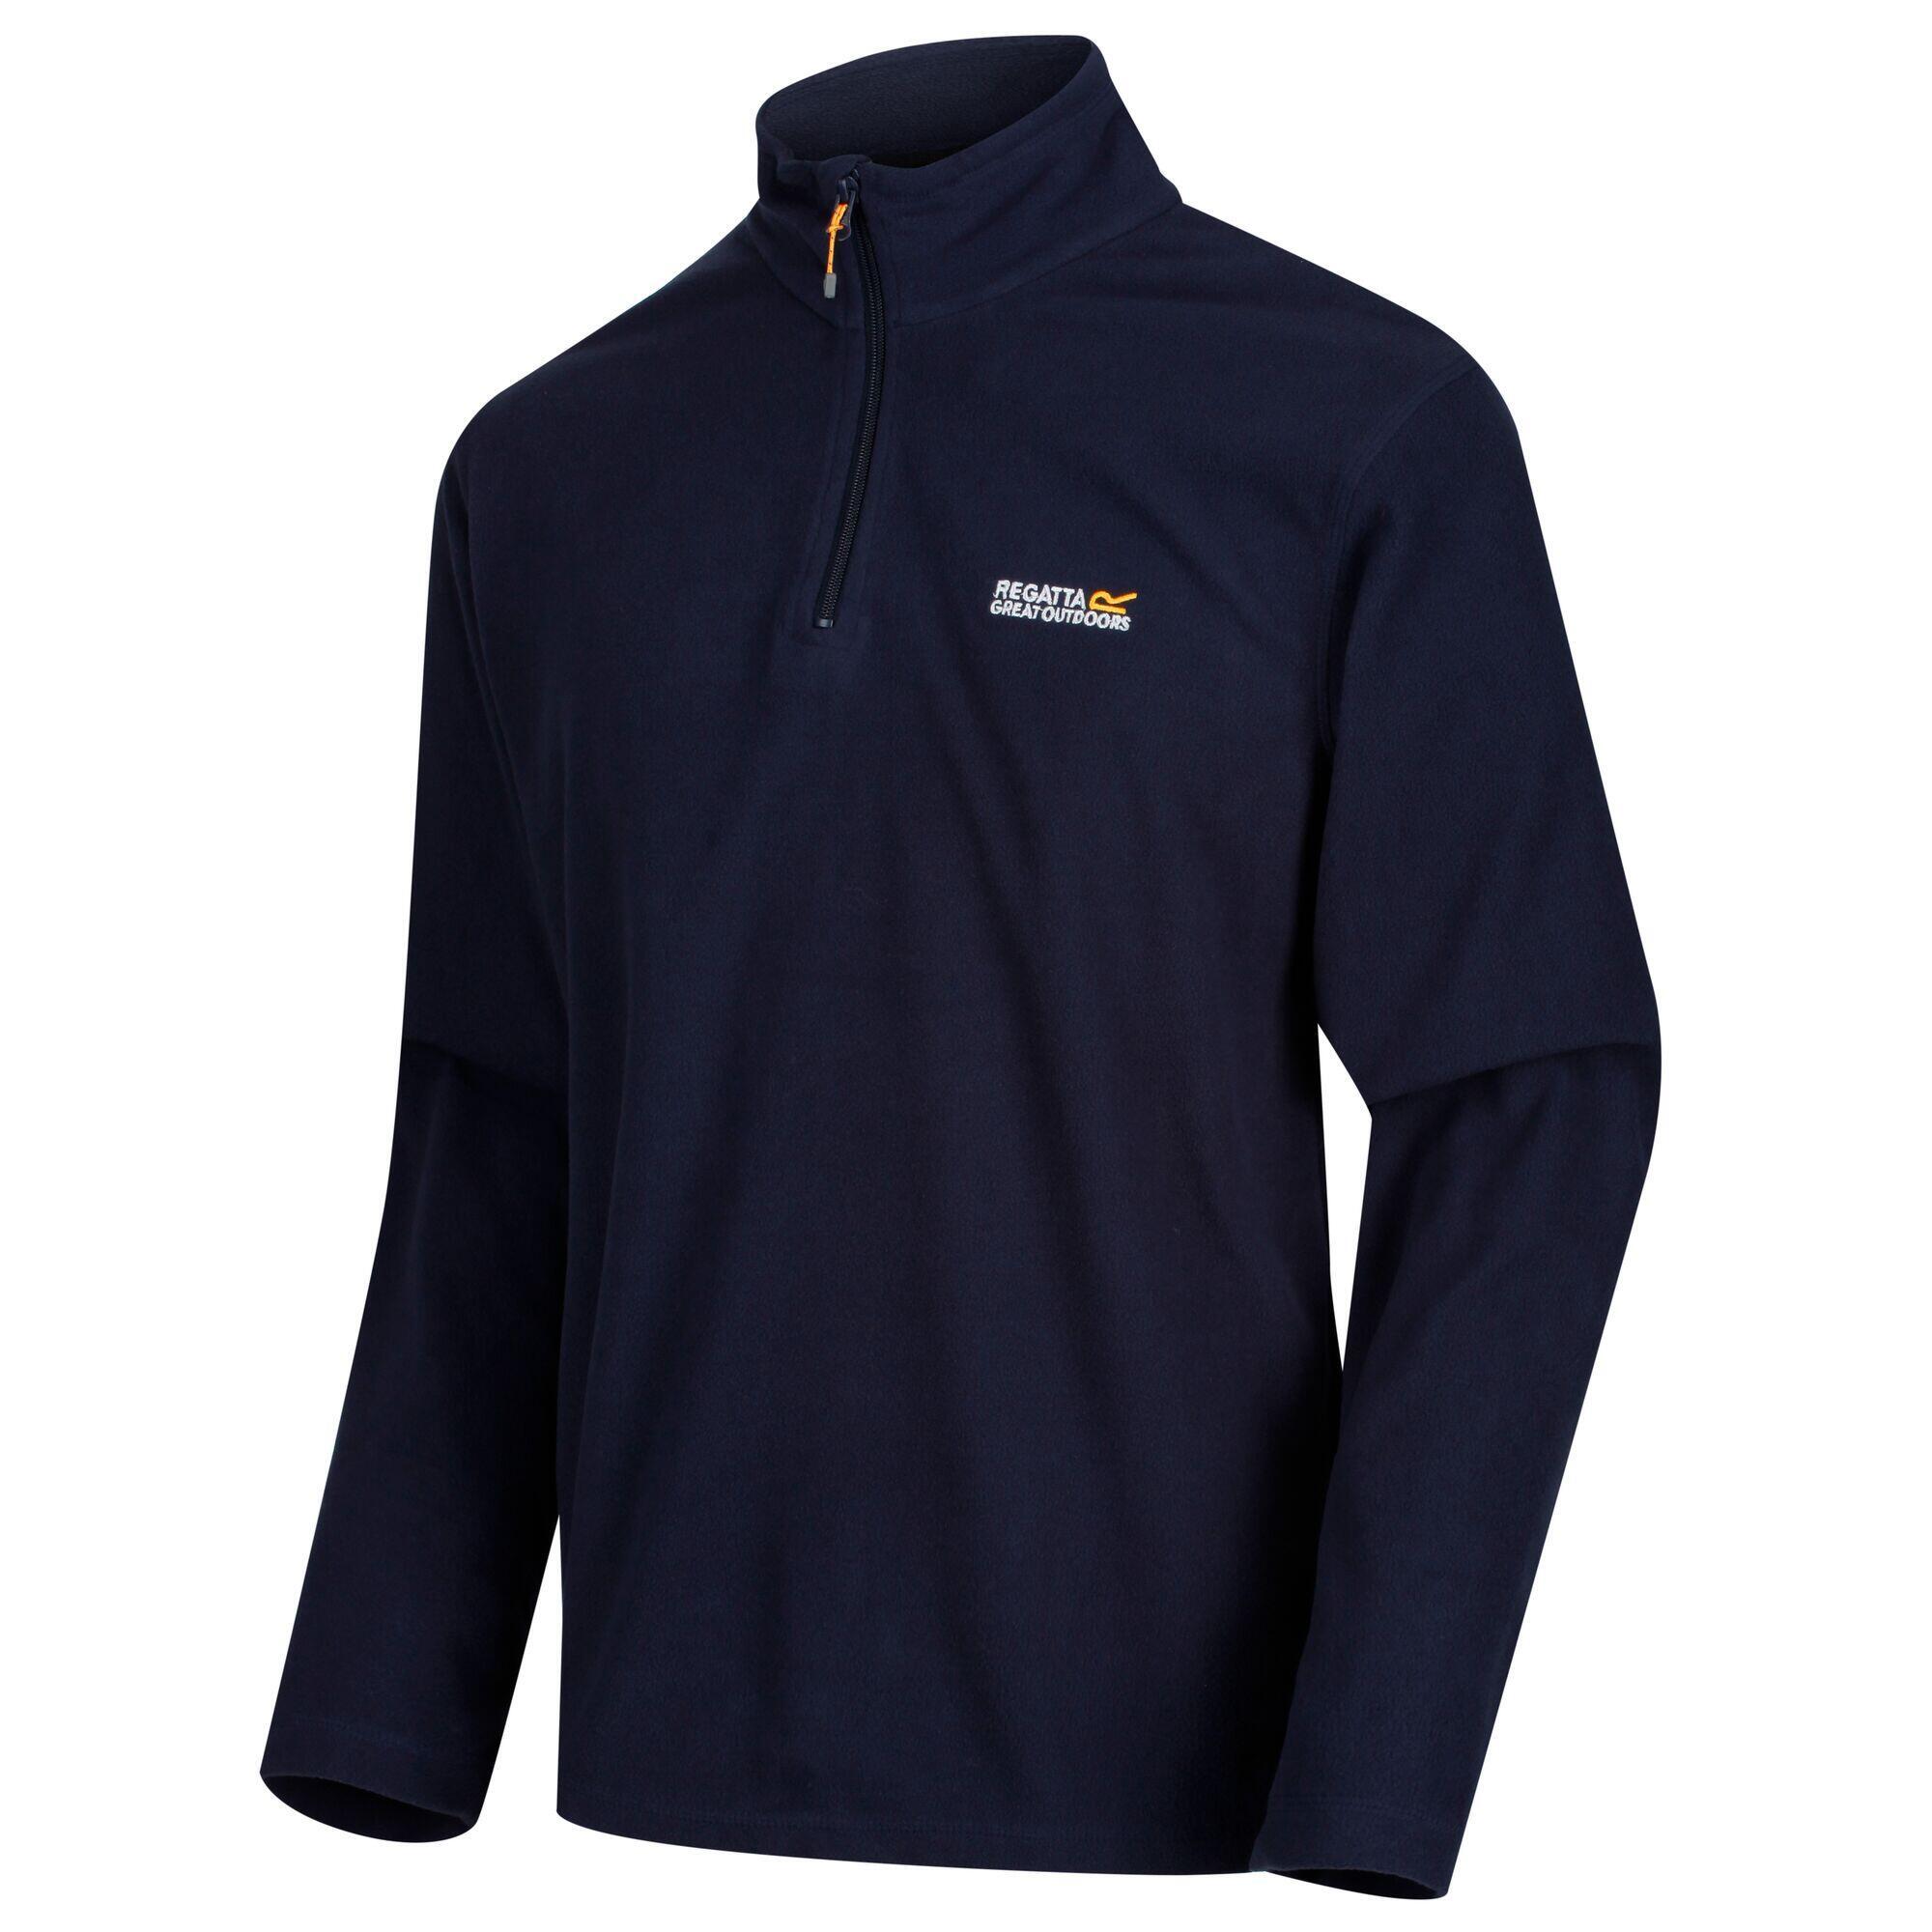 Куртка Regatta Thompson мужская флисовая, темно-синий куртка флисовая мужская new look men 250 бирюзовая размер xl